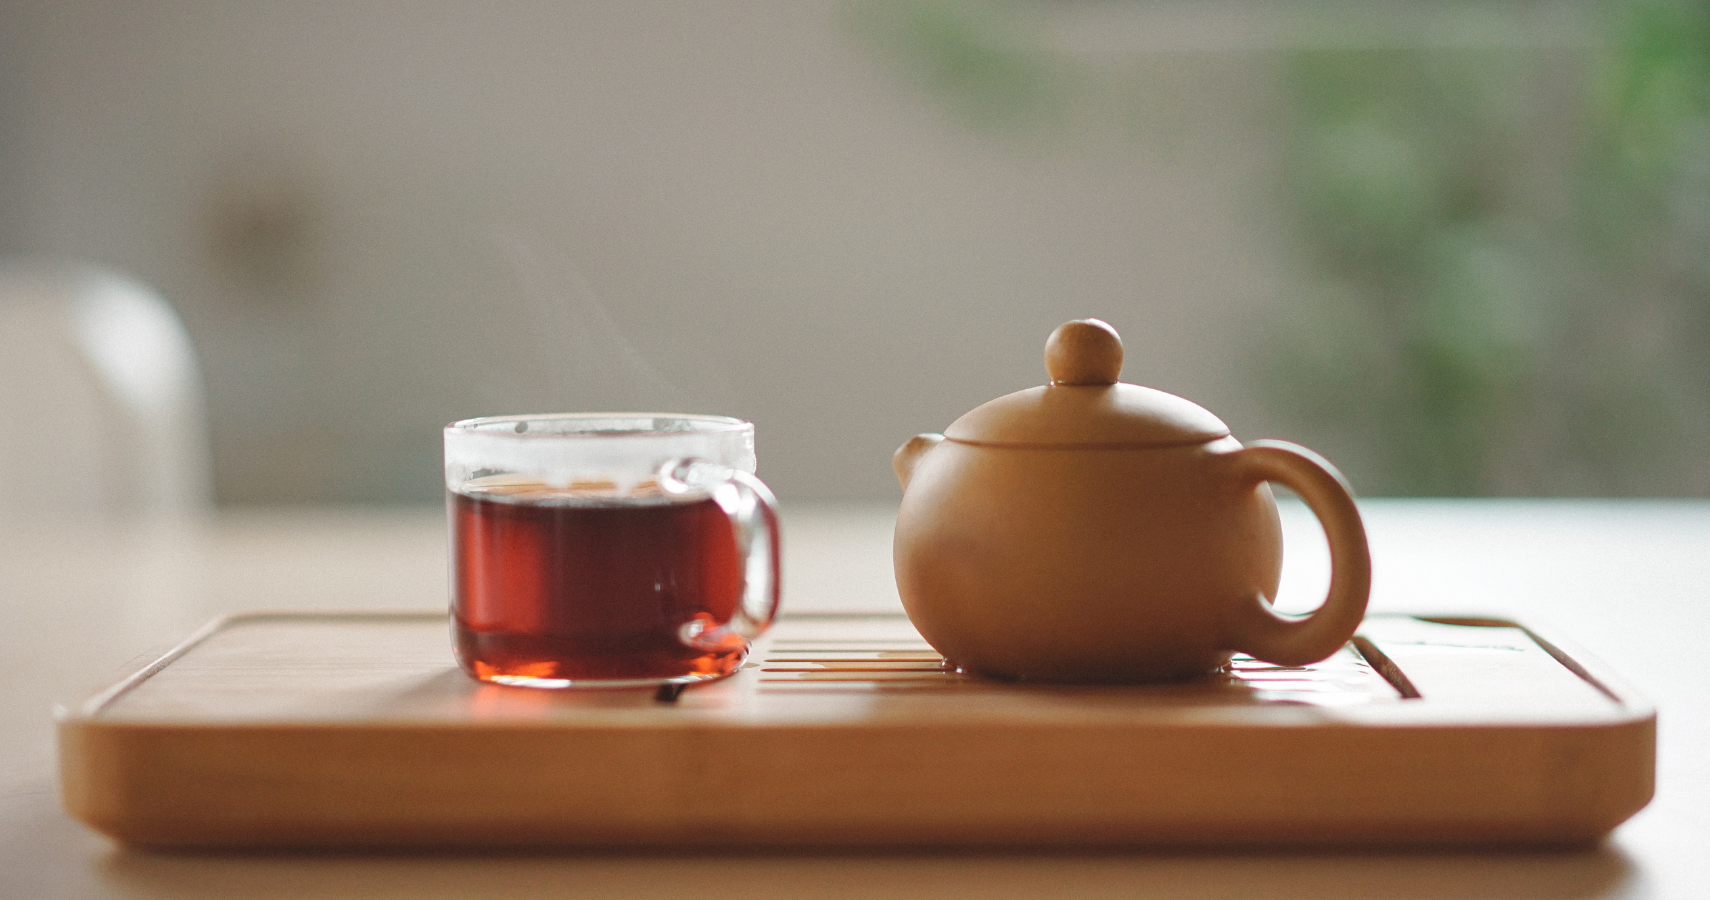 Teacup and Teapot